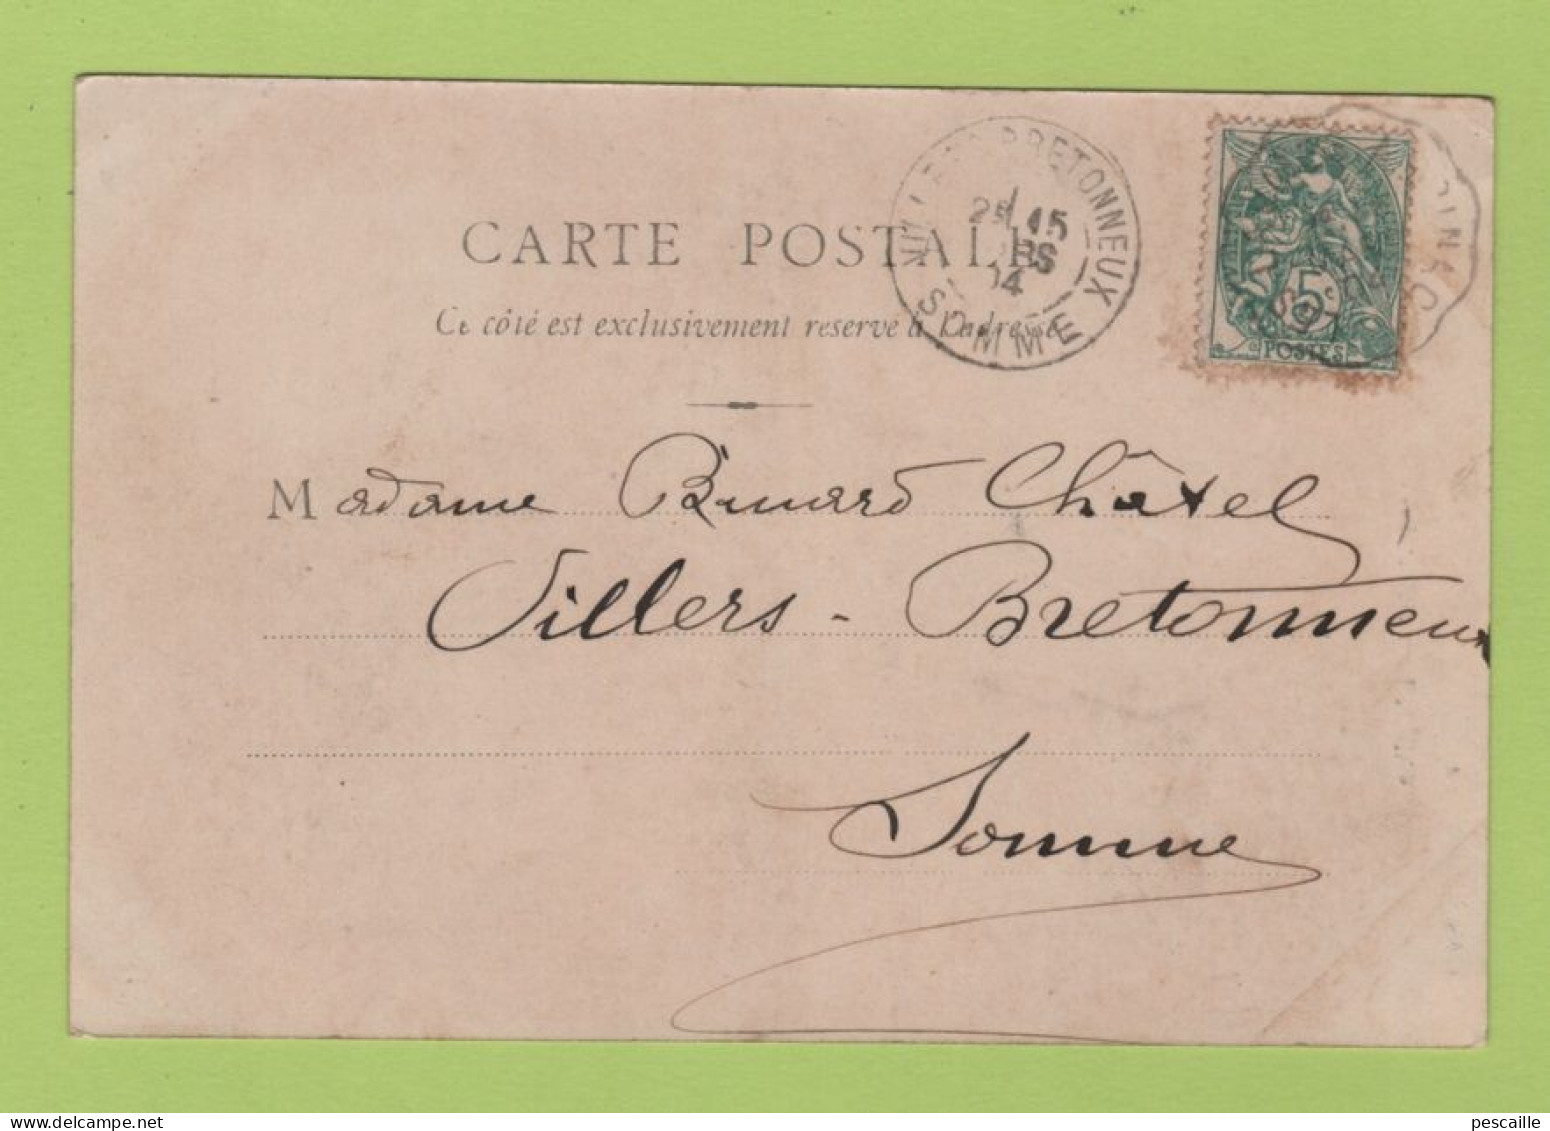 21 COTE D'OR - CP ARNAY LE DUC - L'EGLISE - B.F. CHALON SUR SAONE N° 32 - CIRCULEE EN 1904 - Arnay Le Duc